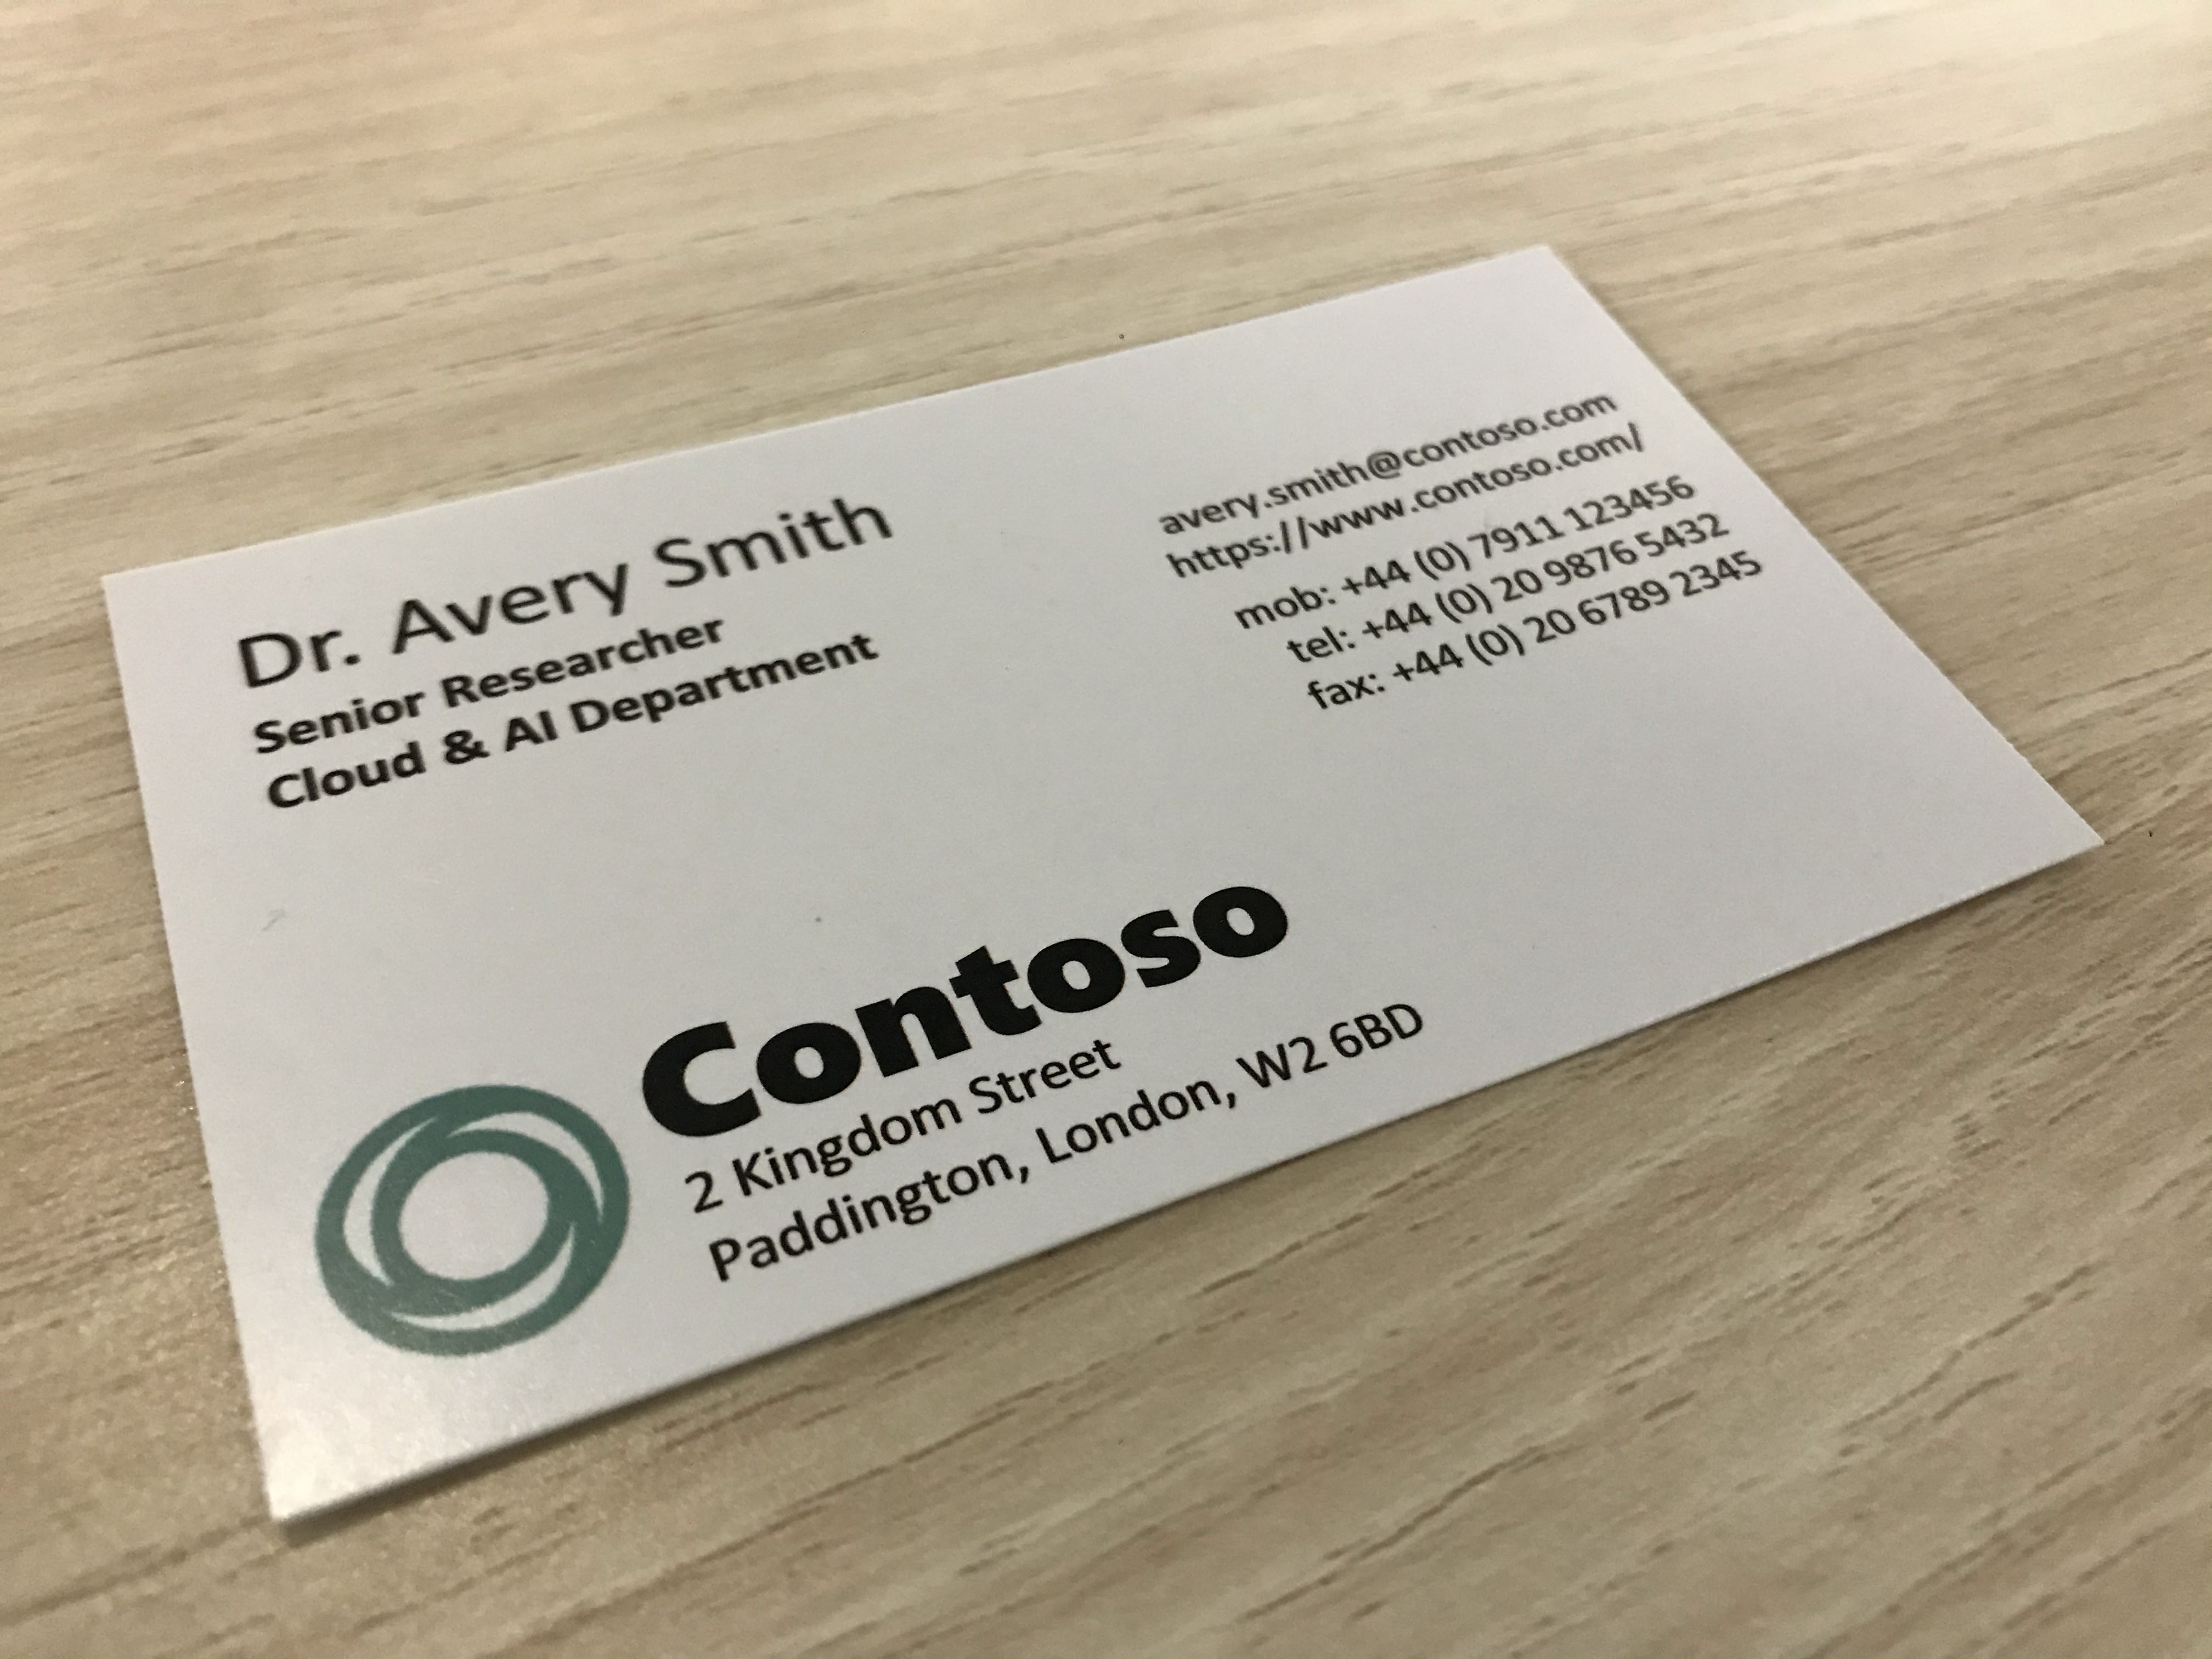 تظهر الصورة بطاقة عمل من شركة تسمى Contoso.